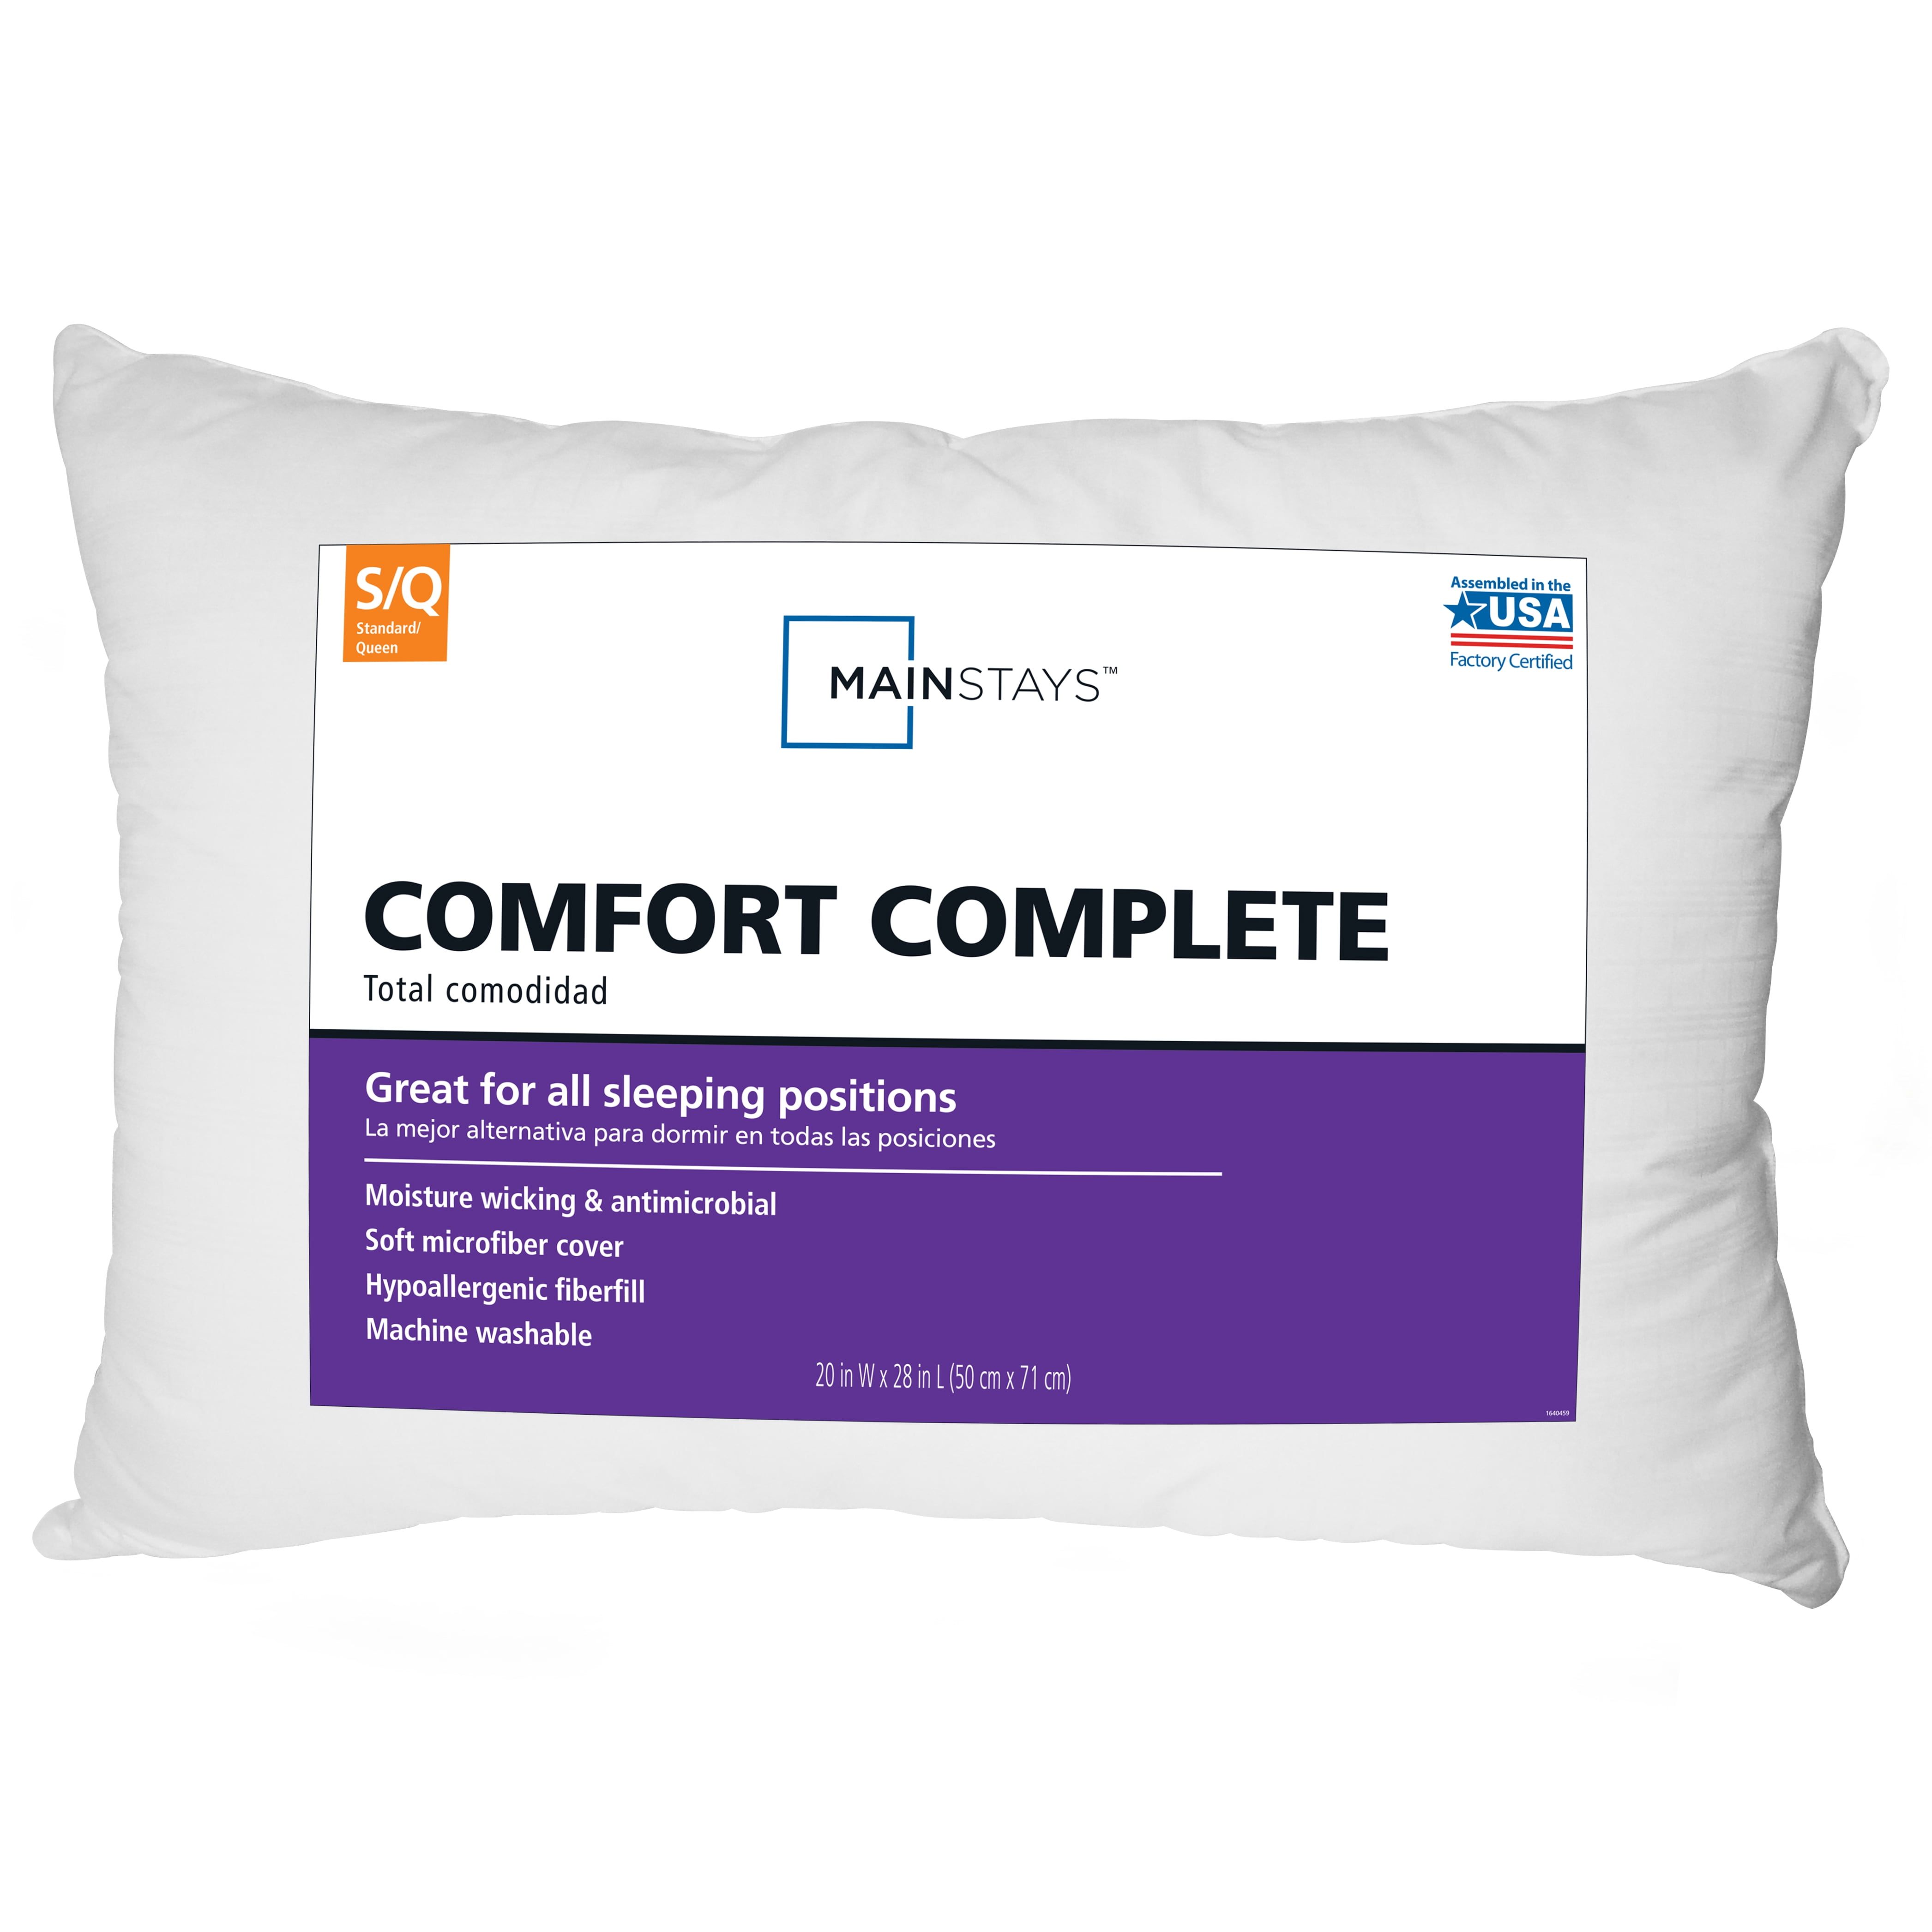 Mainstays Comfort Complete Standard/Queen Size Pillow 